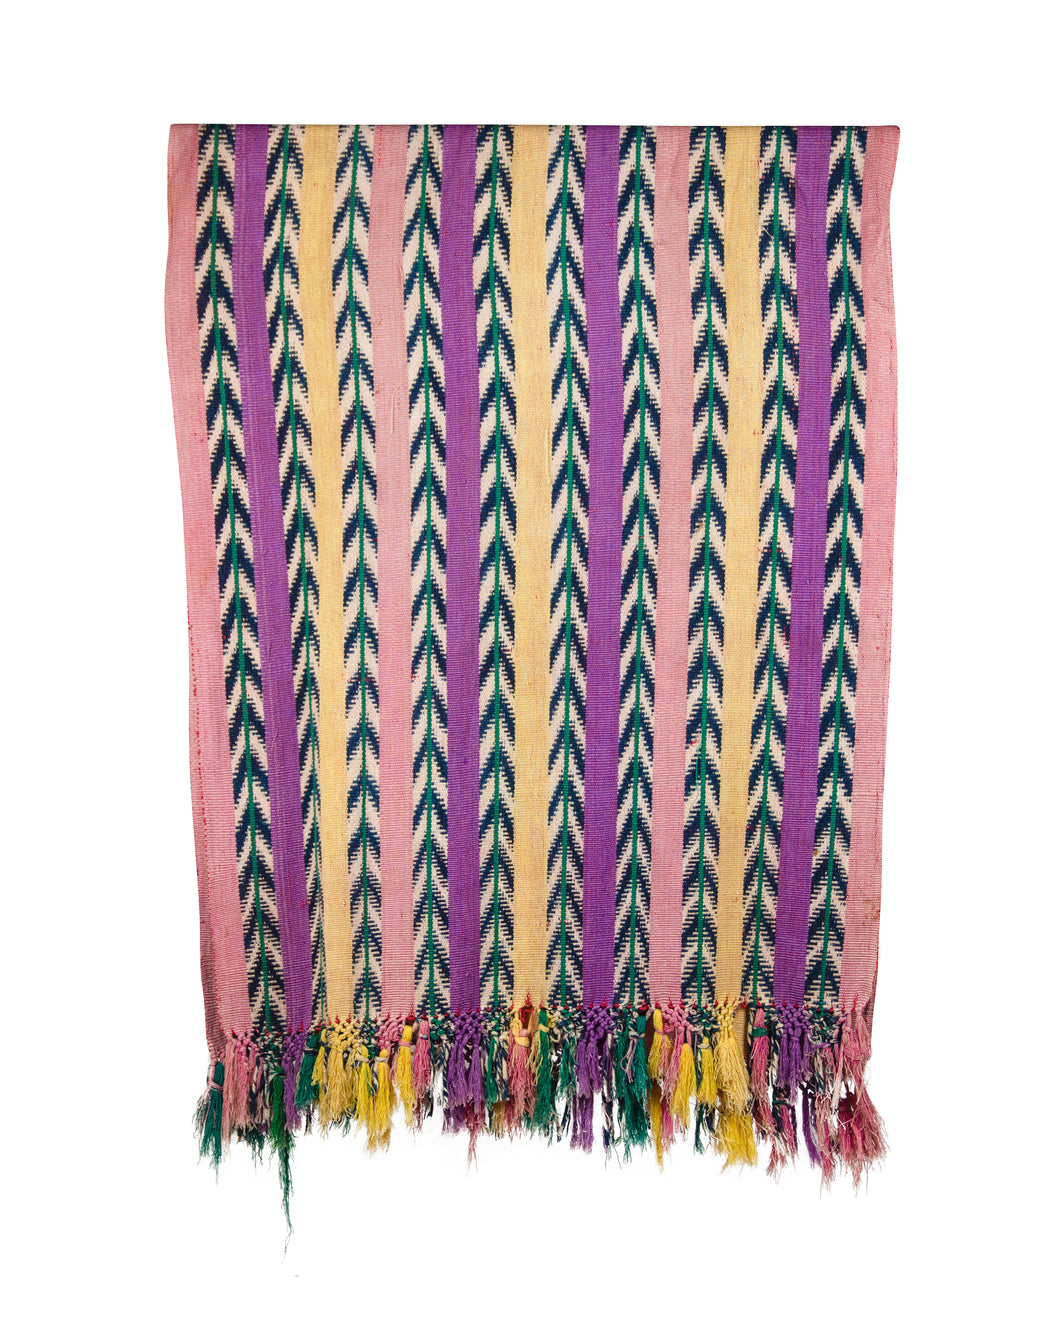 handmade-traditional-woven-rebozo-shawl.jpg